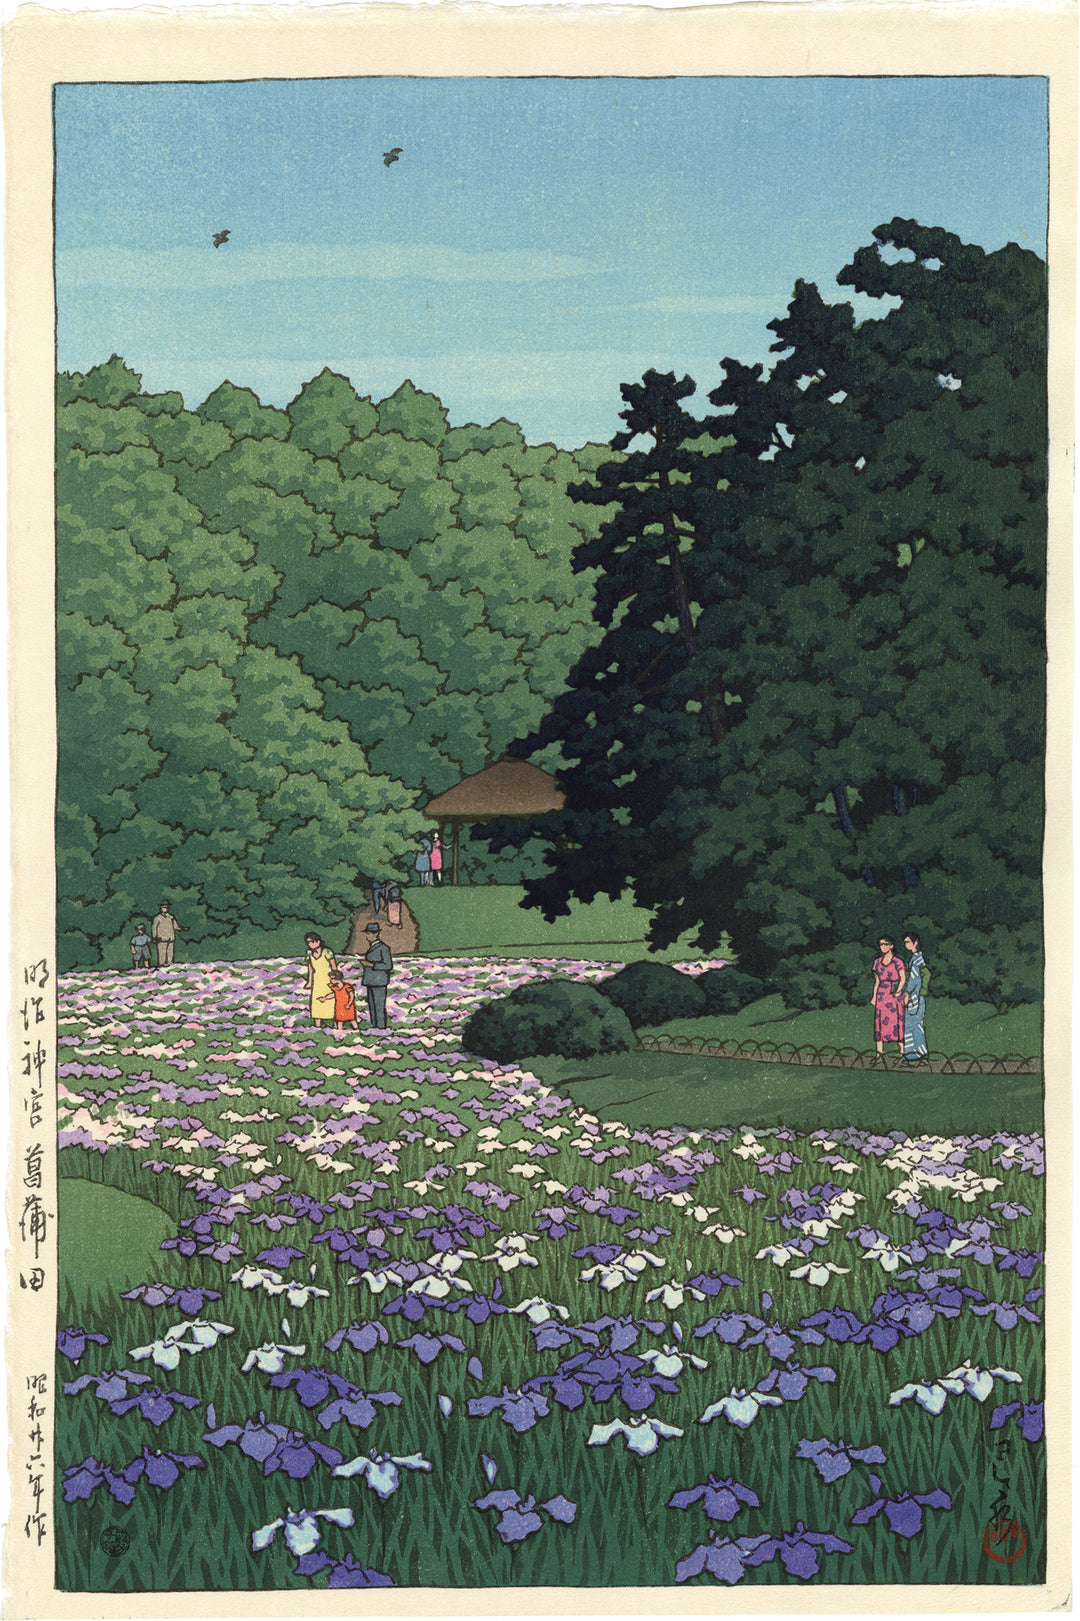 明治神宮菖蒲田 by Hasui Kawase - 1951年 - 38.8 x 25.8 cm 